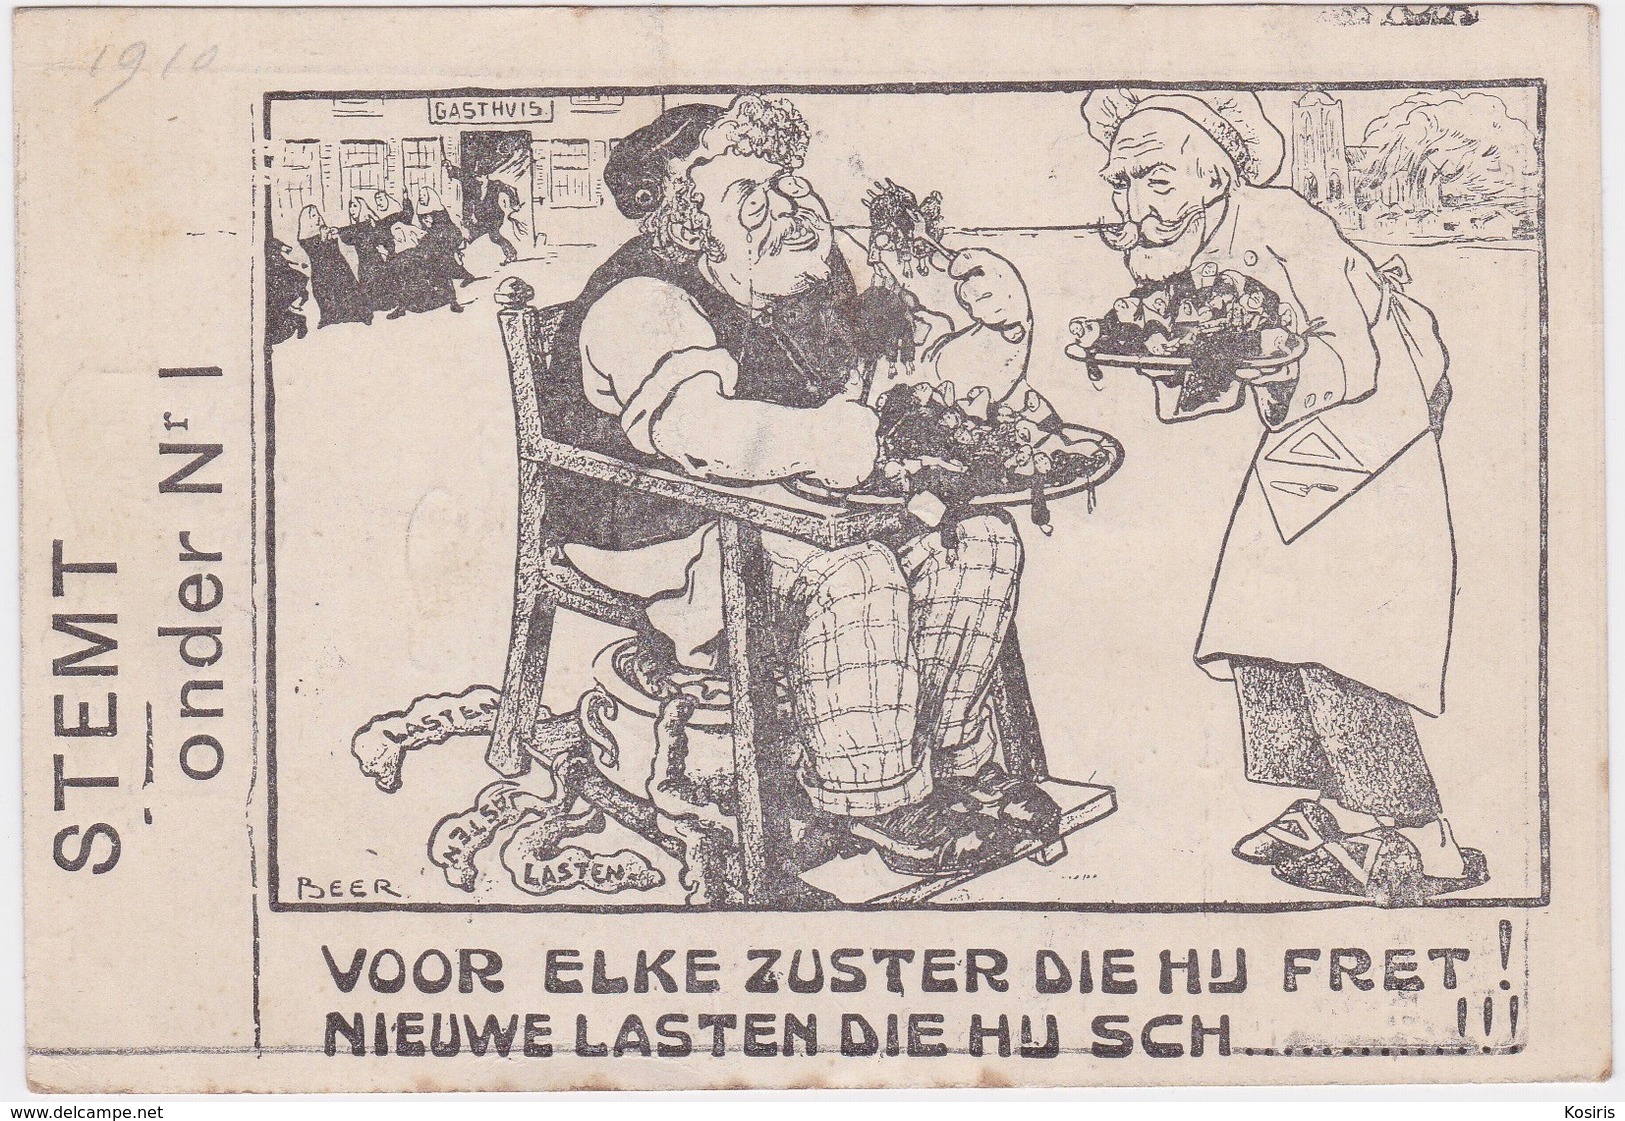 Antwerpen 1910. Ste Onder Nr 1, Voor Elke Zuster Die Hij Fret!nieuwe Lasten Die Hij Sch.....!!! - Antwerpen